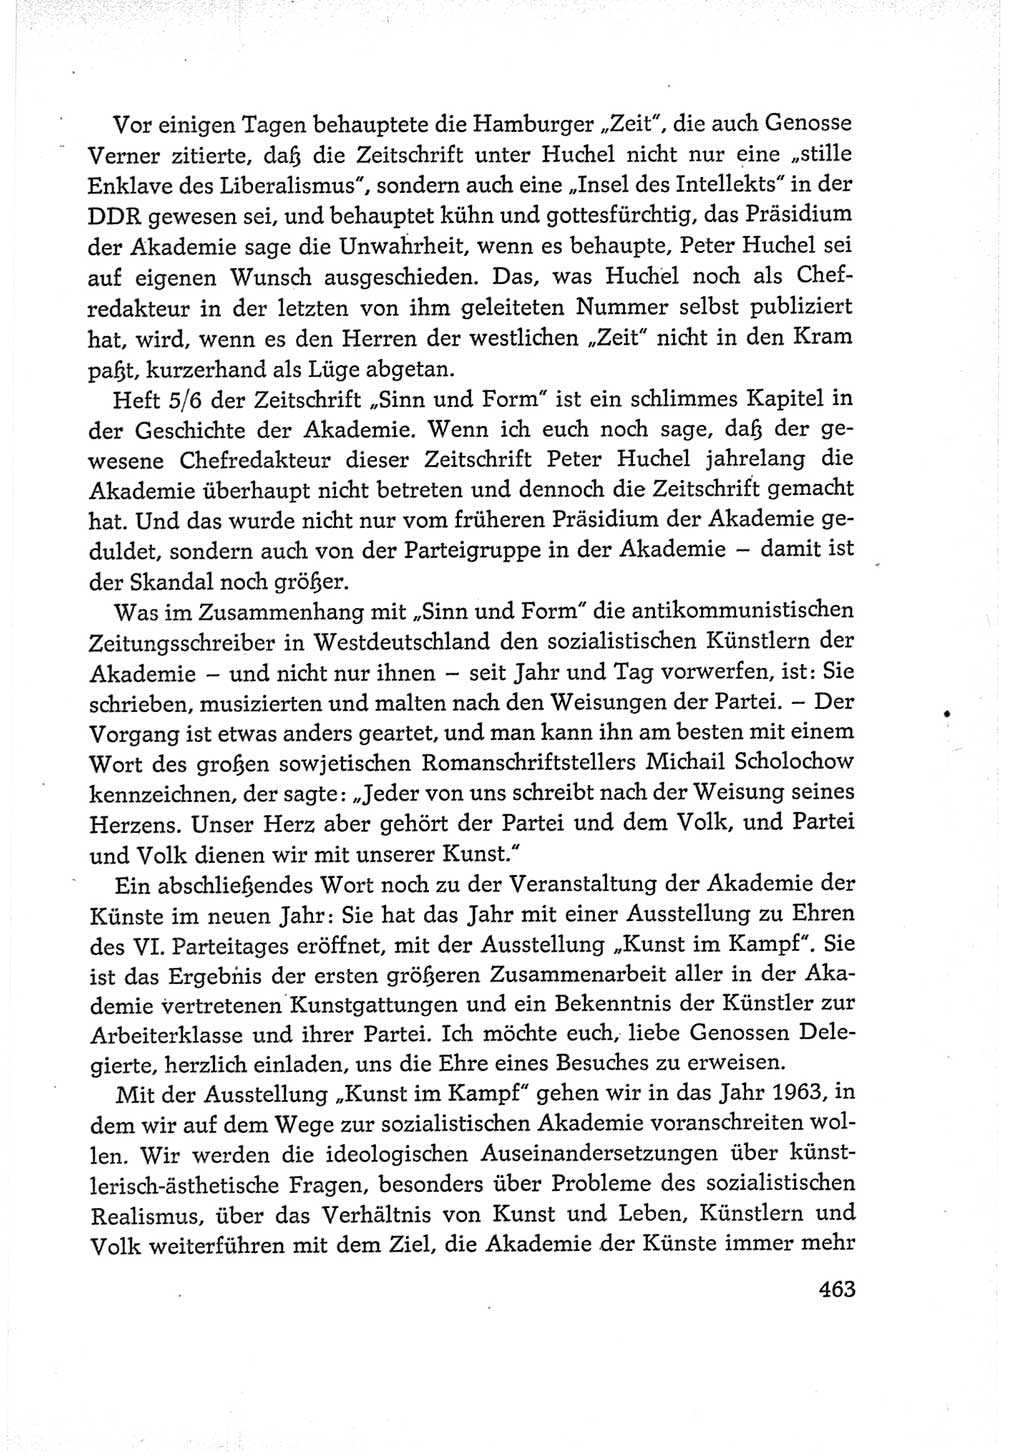 Protokoll der Verhandlungen des Ⅵ. Parteitages der Sozialistischen Einheitspartei Deutschlands (SED) [Deutsche Demokratische Republik (DDR)] 1963, Band Ⅰ, Seite 463 (Prot. Verh. Ⅵ. PT SED DDR 1963, Bd. Ⅰ, S. 463)